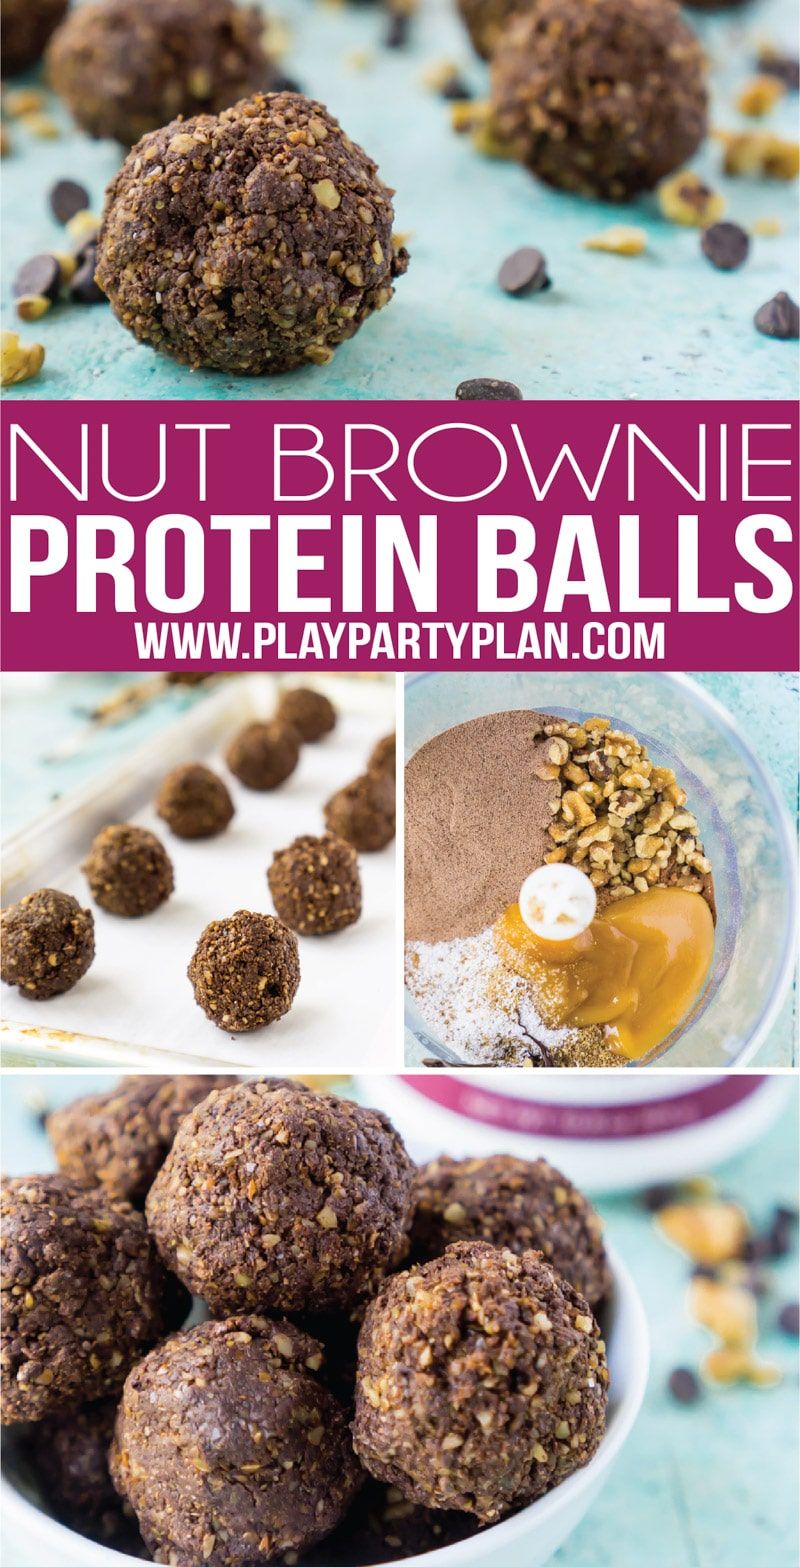 Aquestes boles de proteïna brownie de xocolata sense coure són una alternativa saludable quan desitgeu alguna cosa dolça. No contenen gluten i utilitzen cacau en pols i xips de xocolata baixes en carbohidrats per donar un toc de dolçor. Són fàcils de fer i ideals per a tothom, tant per a nens com per a adults.